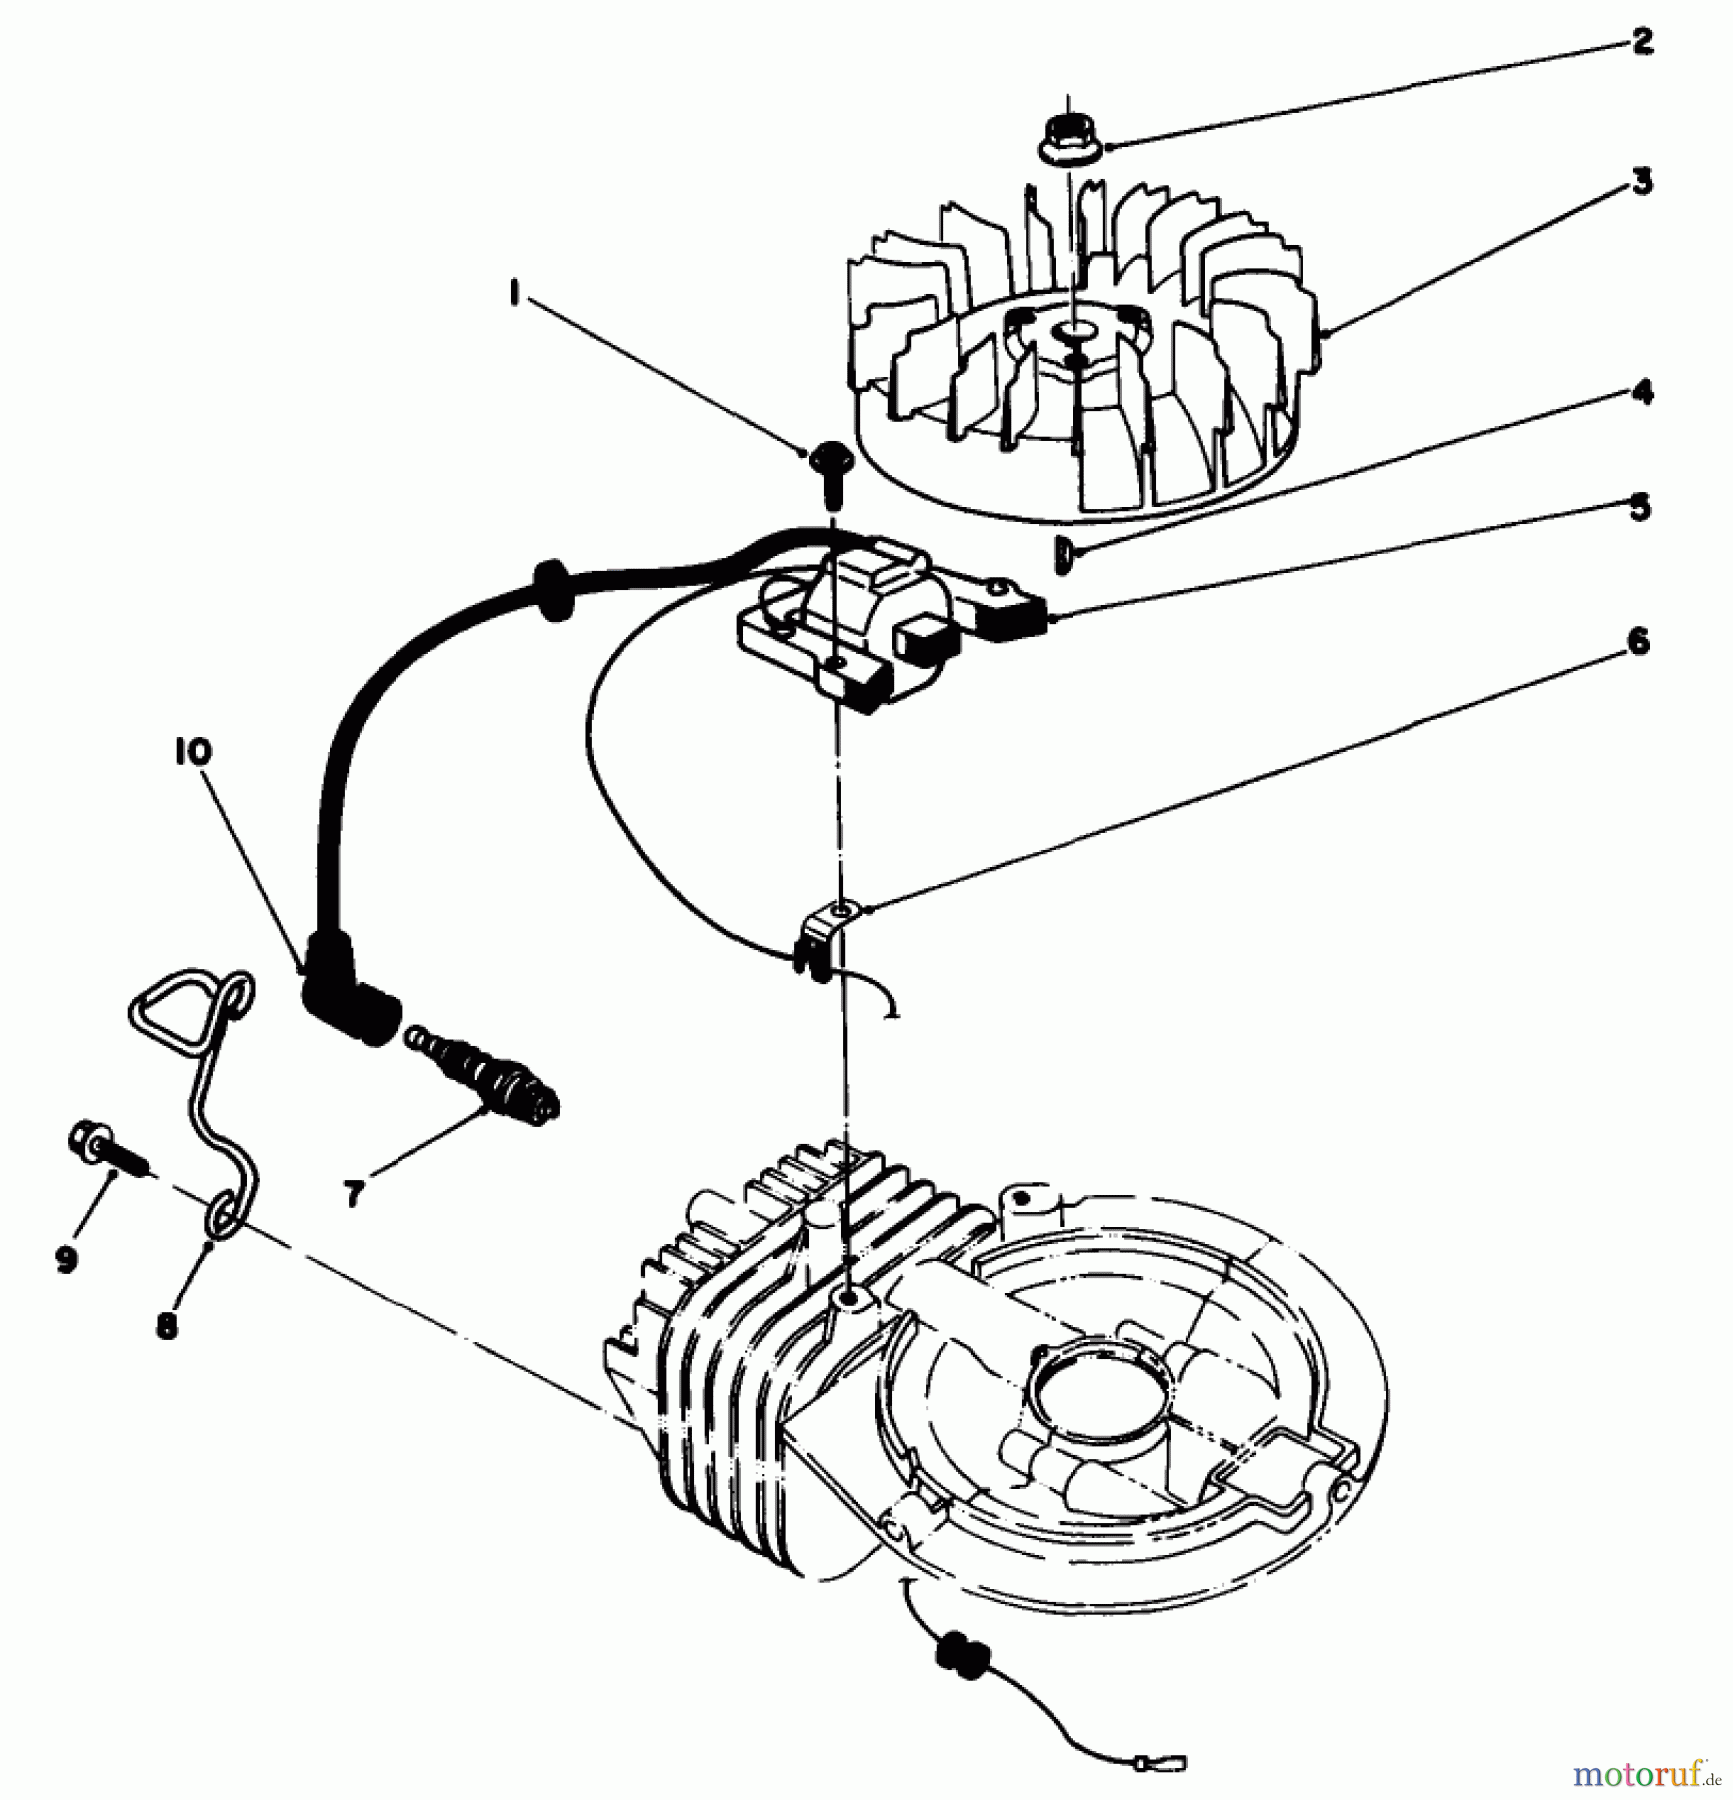  Toro Neu Mowers, Walk-Behind Seite 2 22030 - Toro Lawnmower, 1989 (9000001-9999999) ENGINE ASSEMBLY MODEL NO. 47PH7 #2